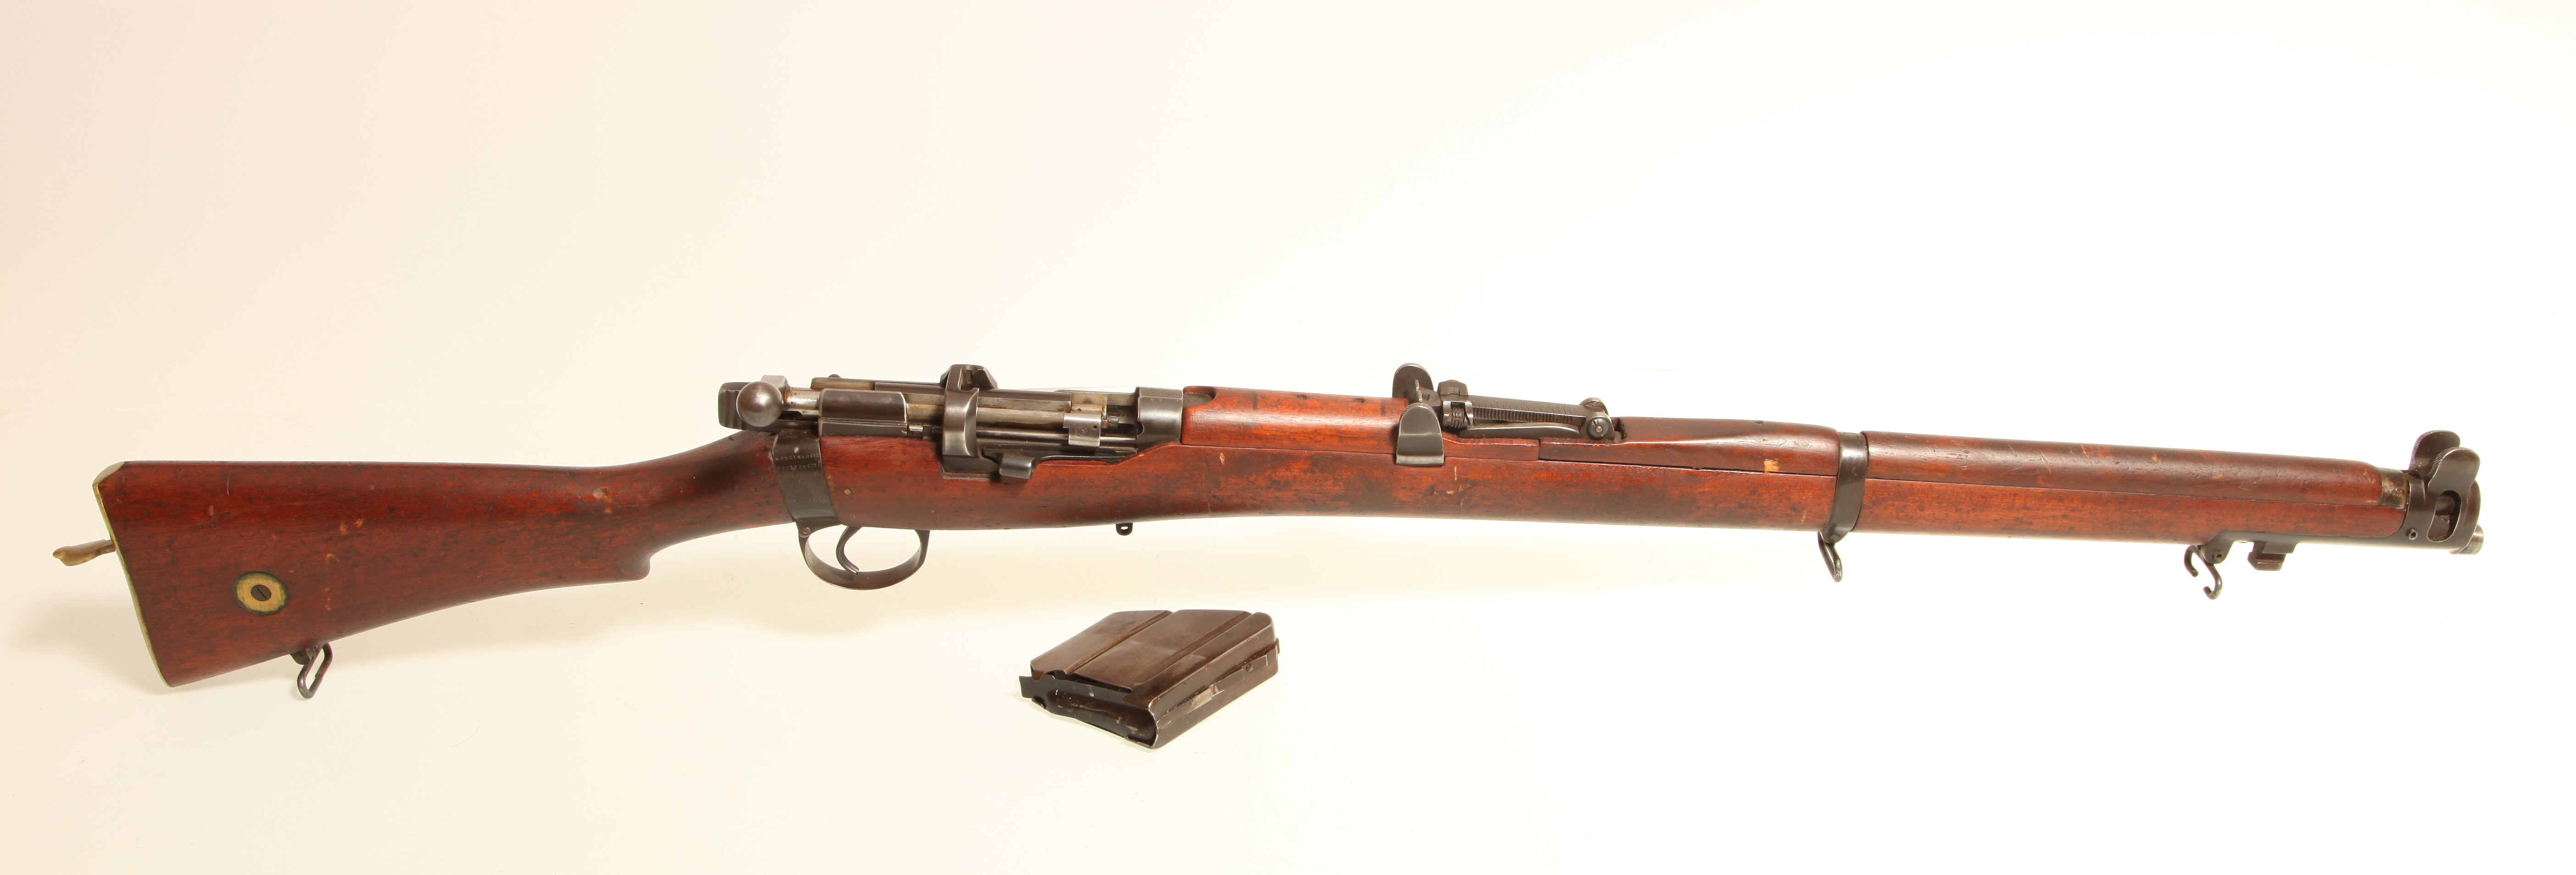 اسلحه لی انفیلد/Lee- Enfield موزه سلاح های دربار